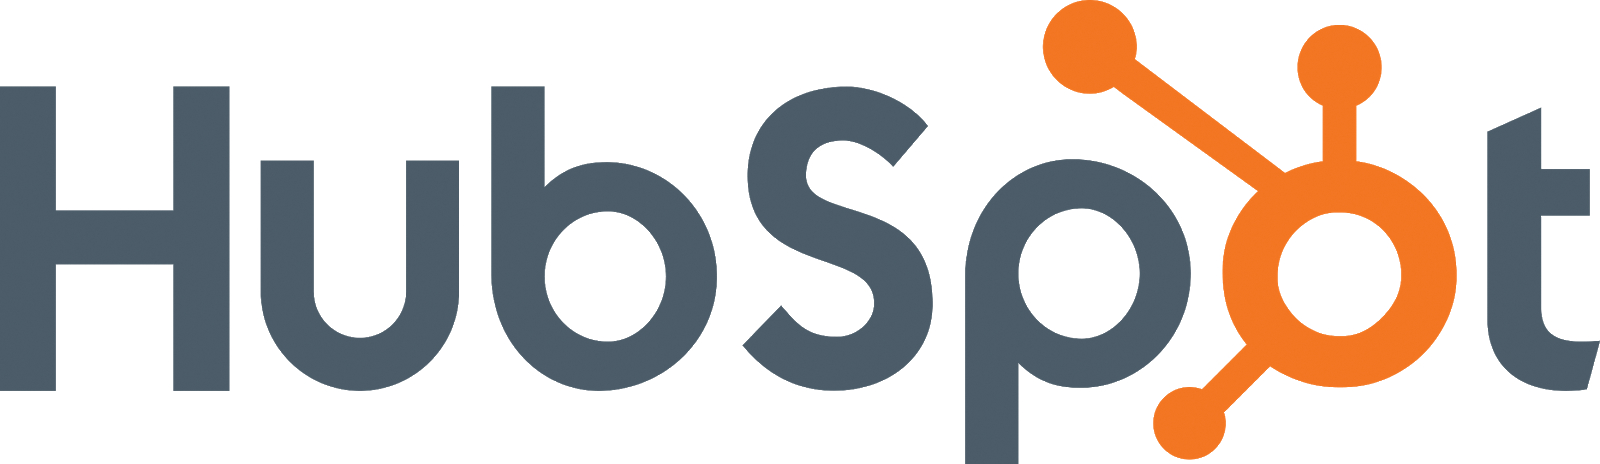 2 HubSpot logo.png